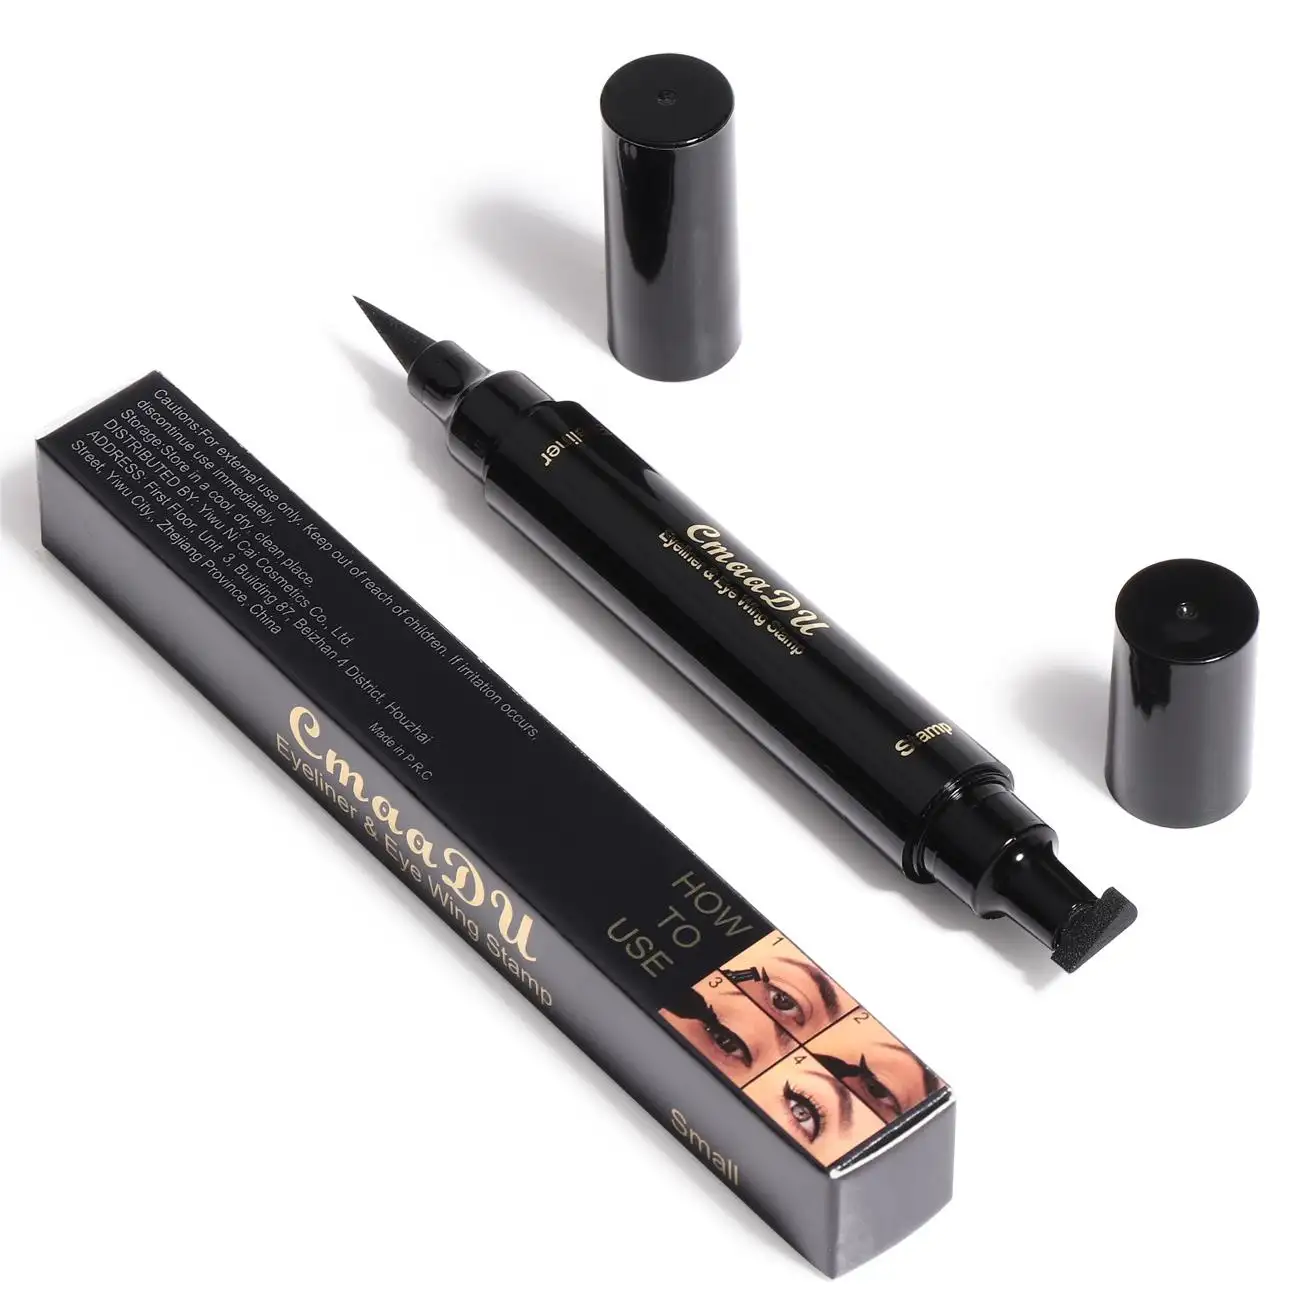 Hot sale Cmaadu Black Liquid Eyeliner Stamp Waterproof Double-ended Eye Liner Pen Cosmetic Eyeliner pencil